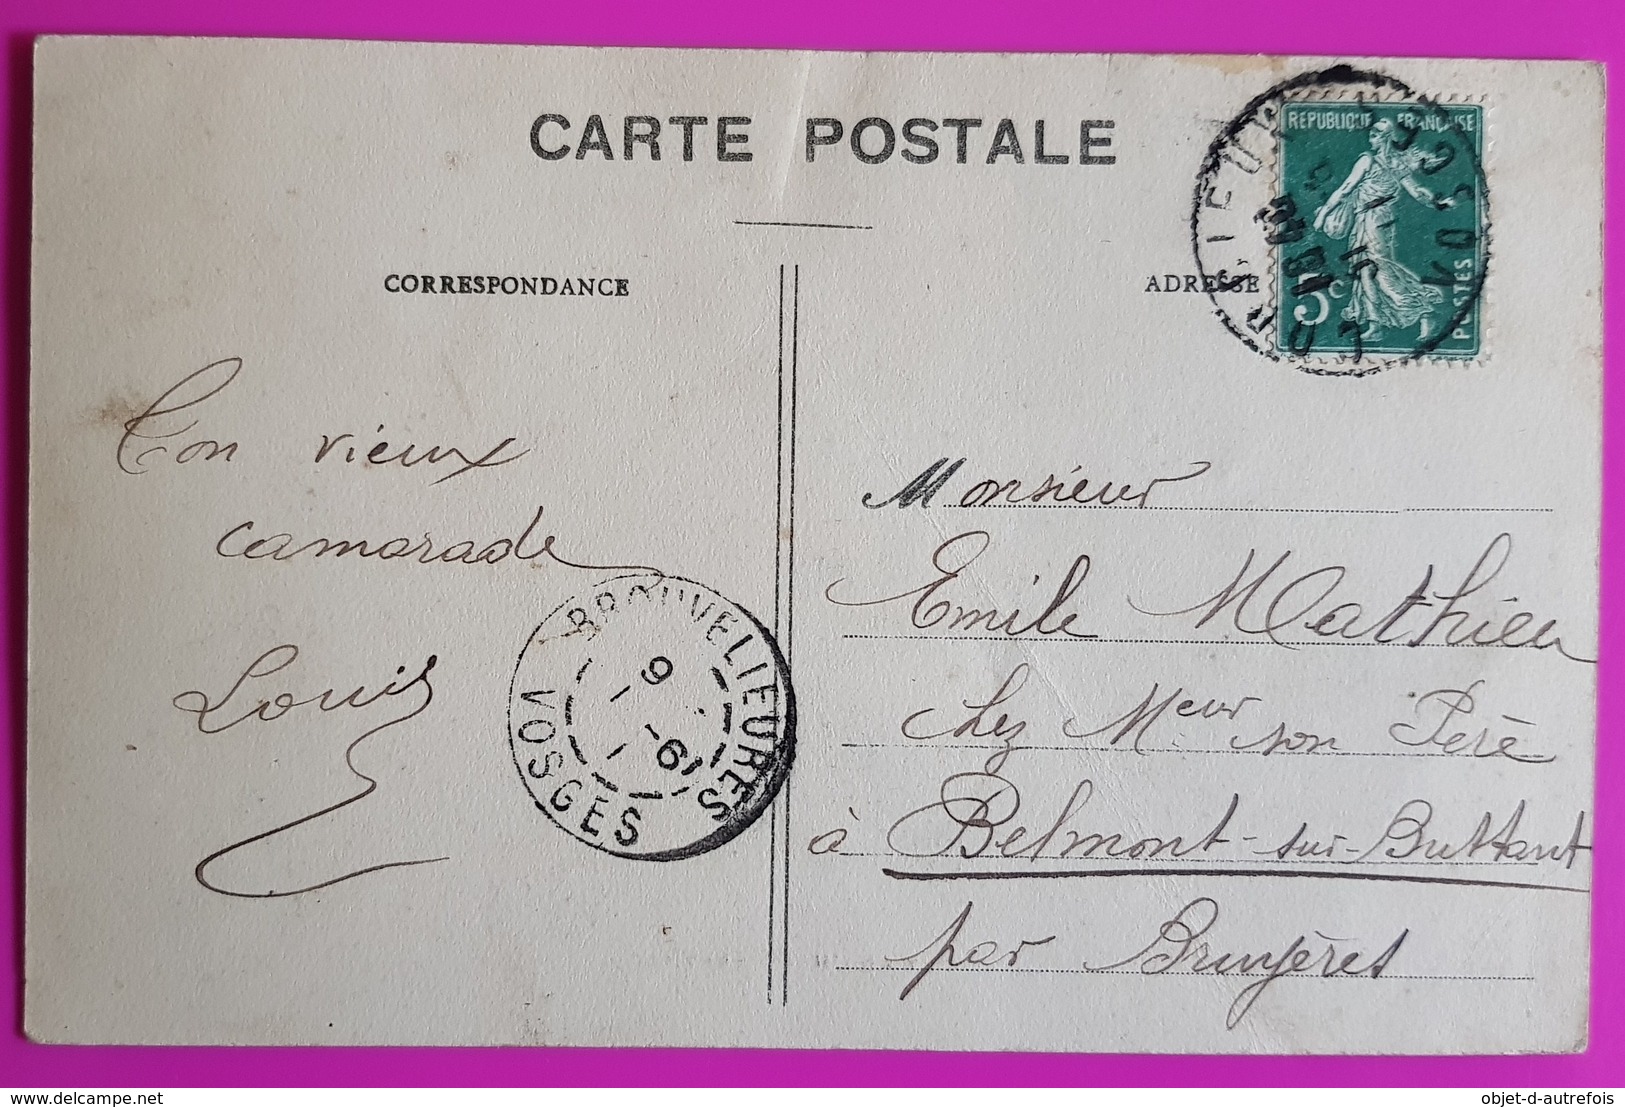 Cpa Corcieux Rue De L'Hotel De Ville 1911 Carte Postale Animée Vosges 88 Weick Saint Dié - Corcieux